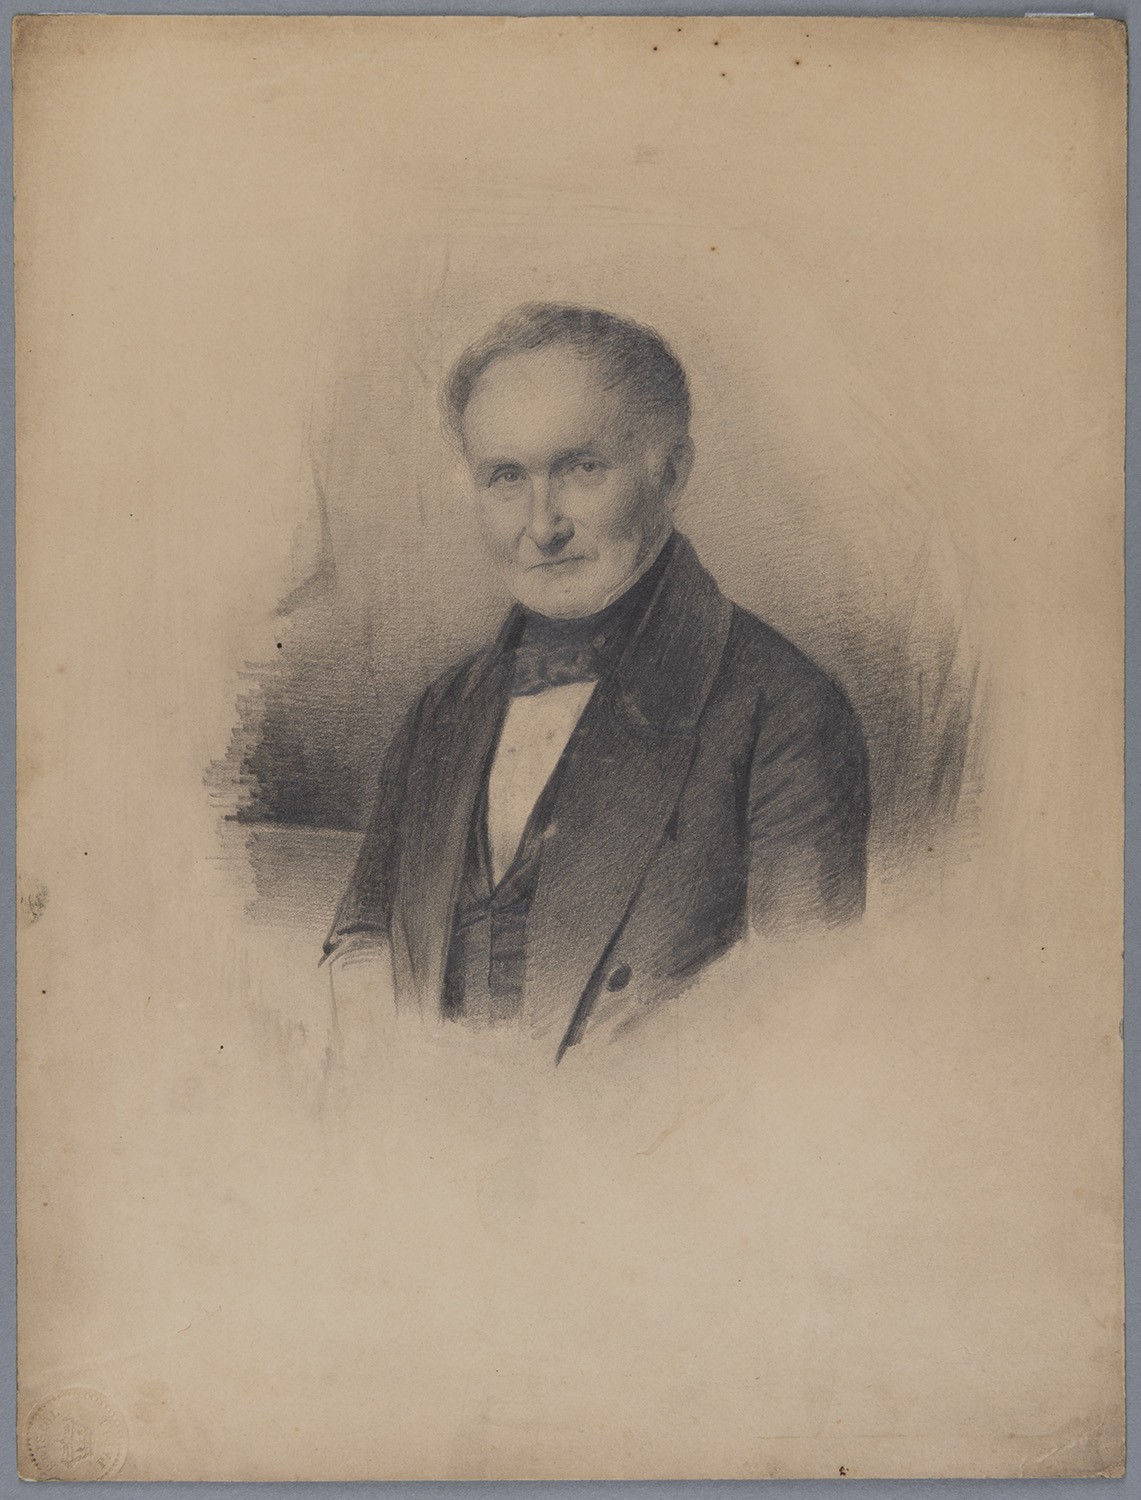 Schulze, Johannes (1786-1869), preuß. Ministerialbeamter (Landesgeschichtliche Vereinigung für die Mark Brandenburg e.V., Archiv CC BY)